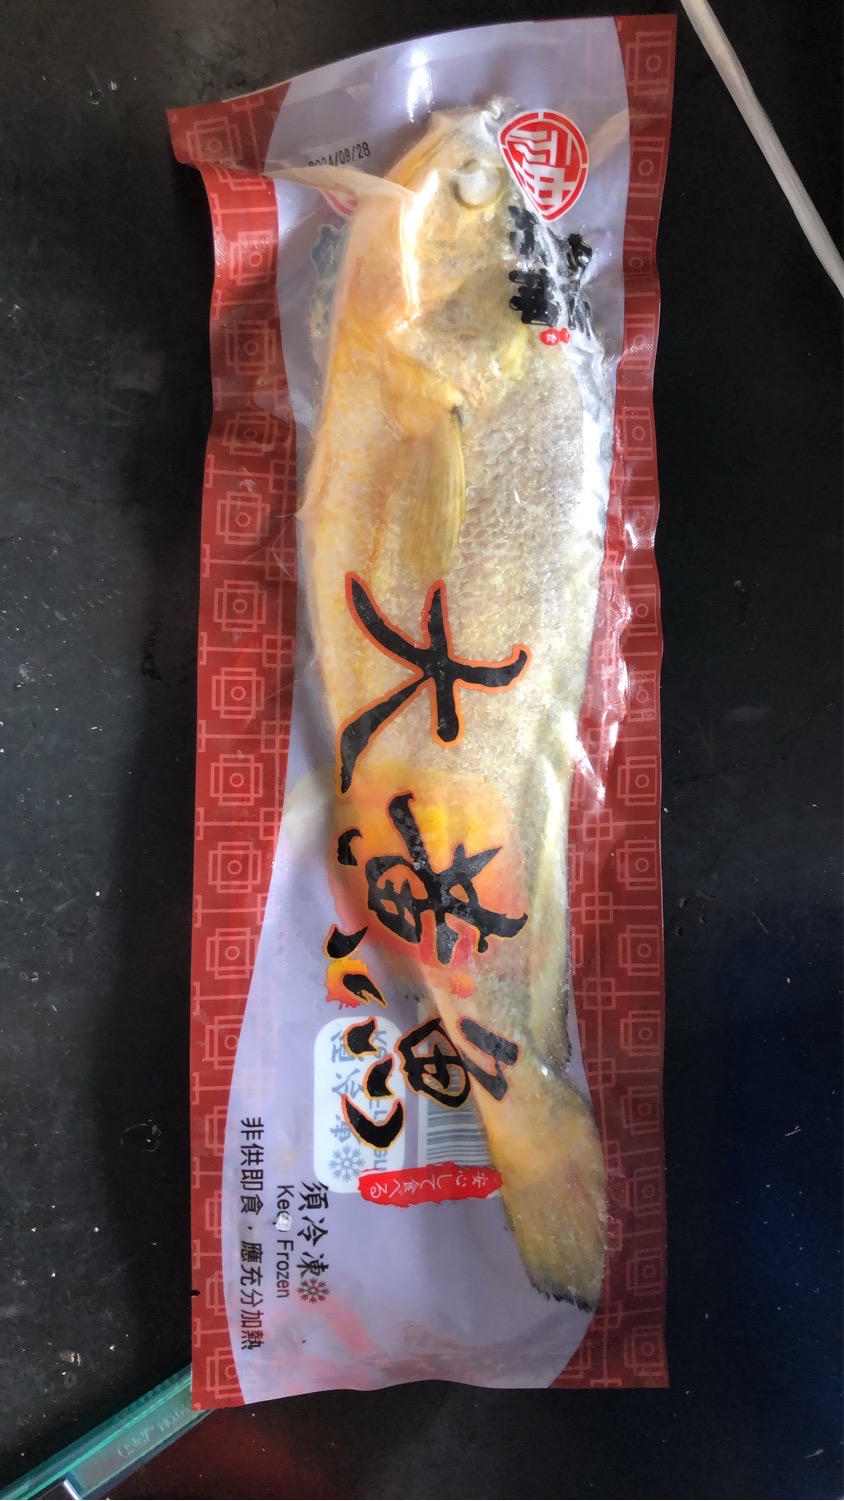       【鮮綠生活】富貴大黃魚45(450g±10%/包 共5包)